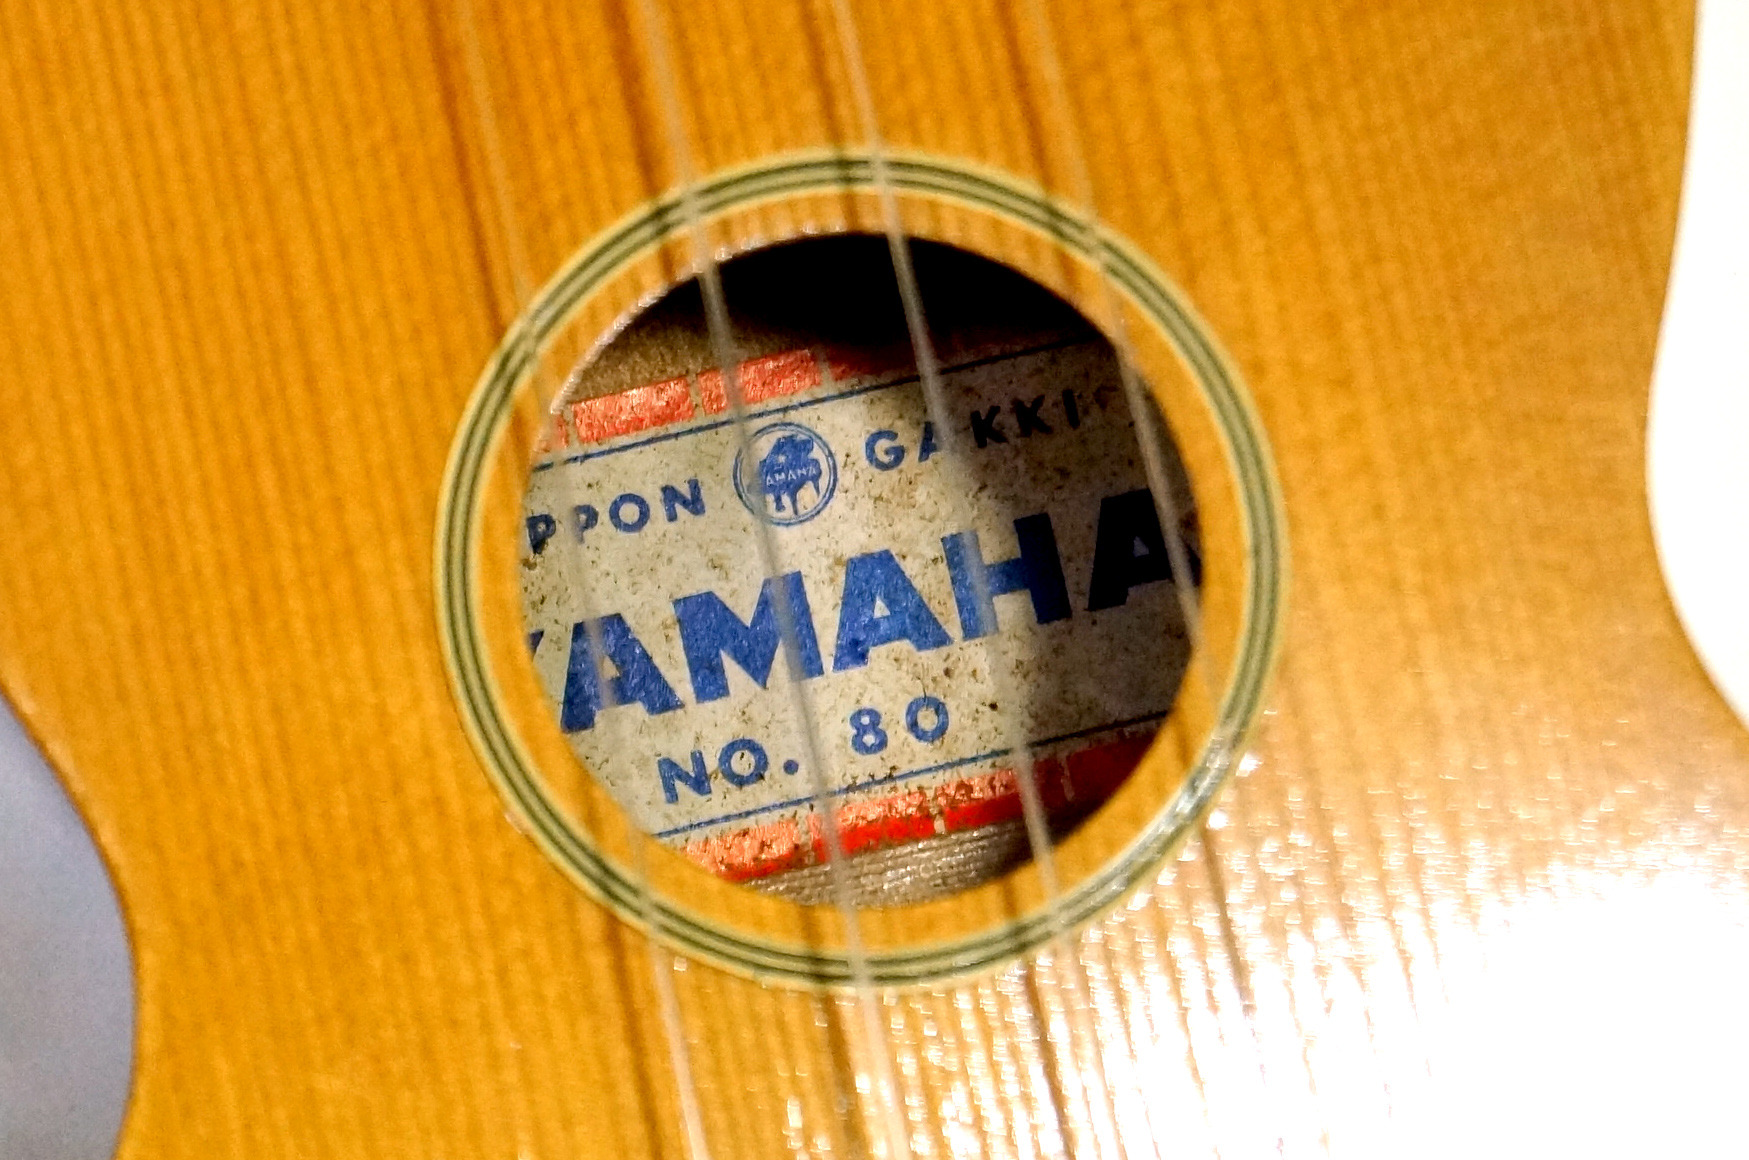 YAMAHA No.80: Carefree the ukelele